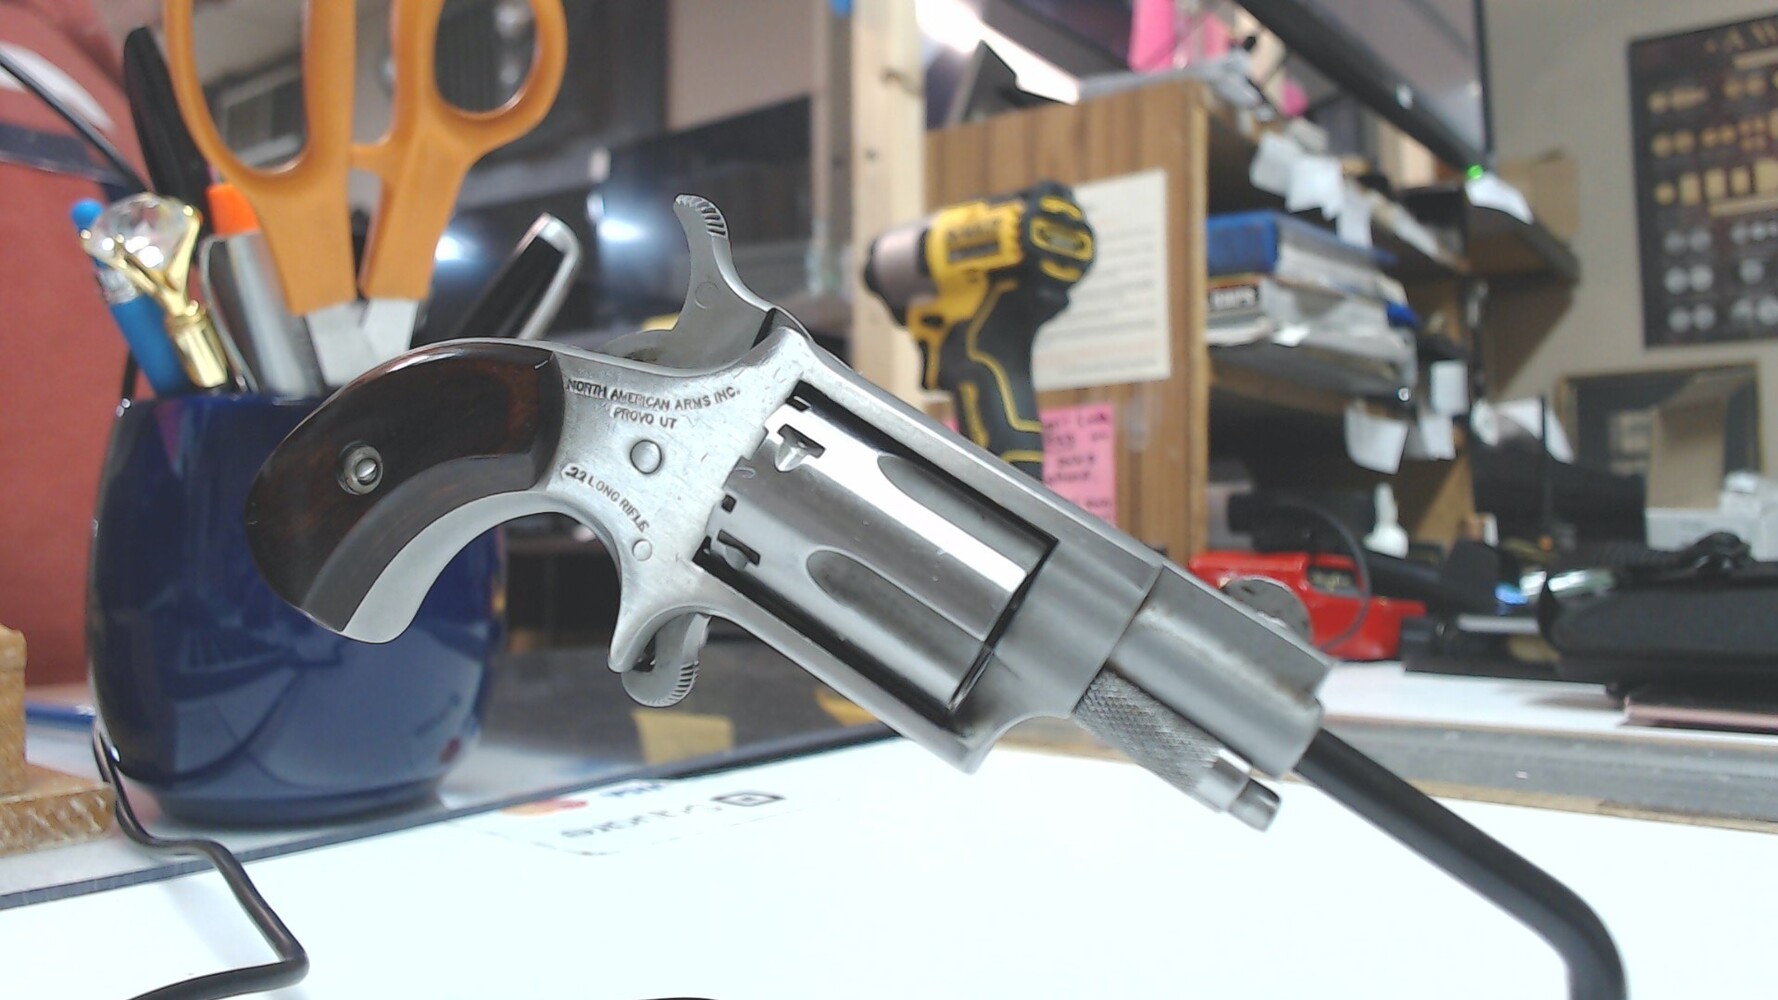 North American Arms Model: Mini Revolver, Revolver 22